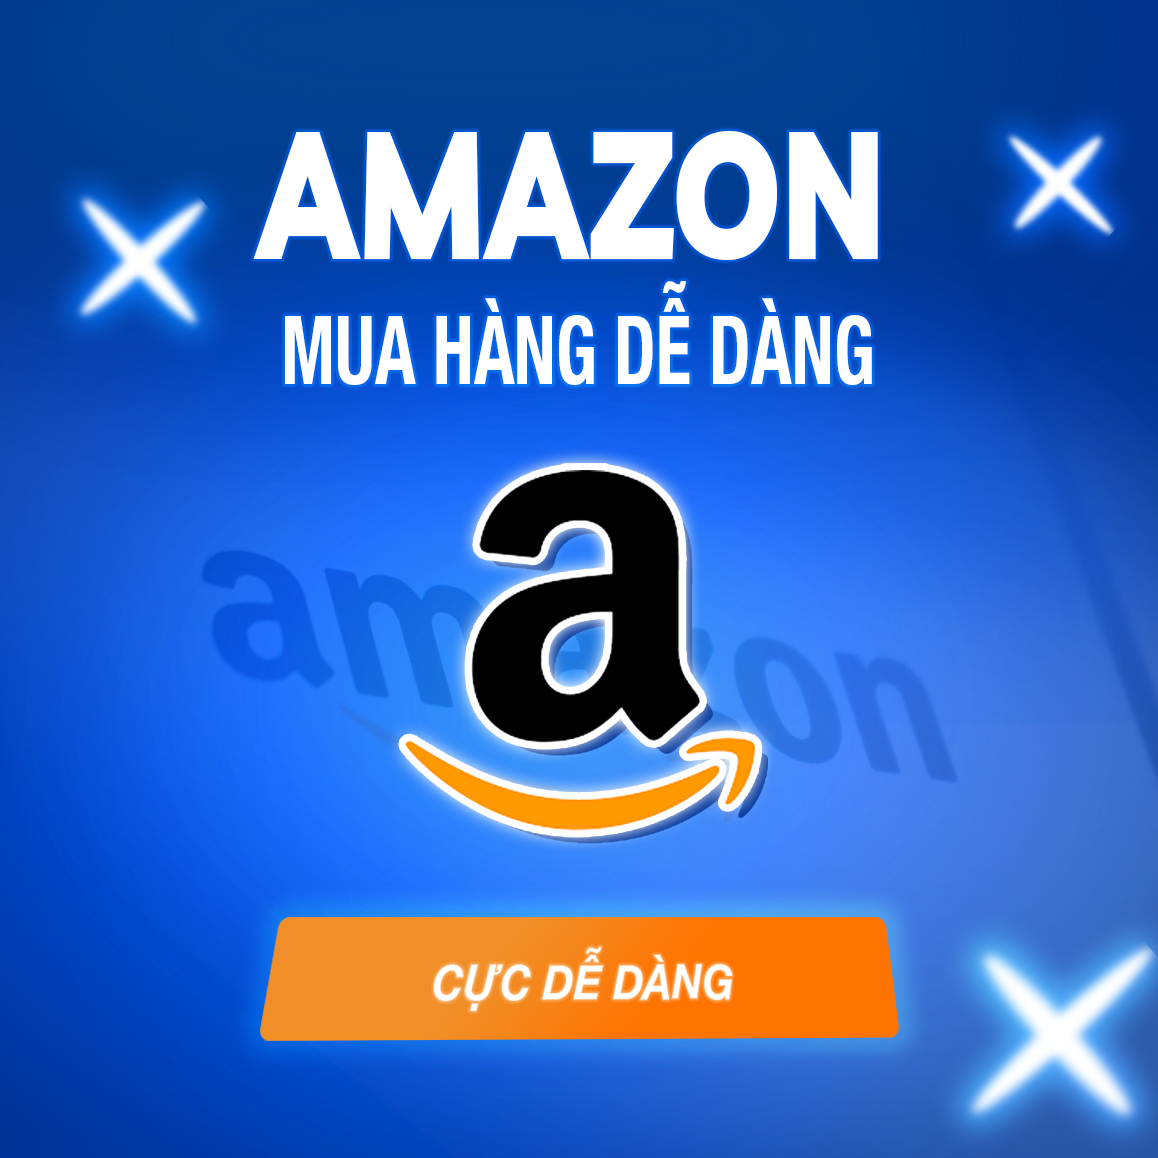 Cách mua hàng Amazon từ Việt Nam chi tiết nhất có thể bạn chưa biết